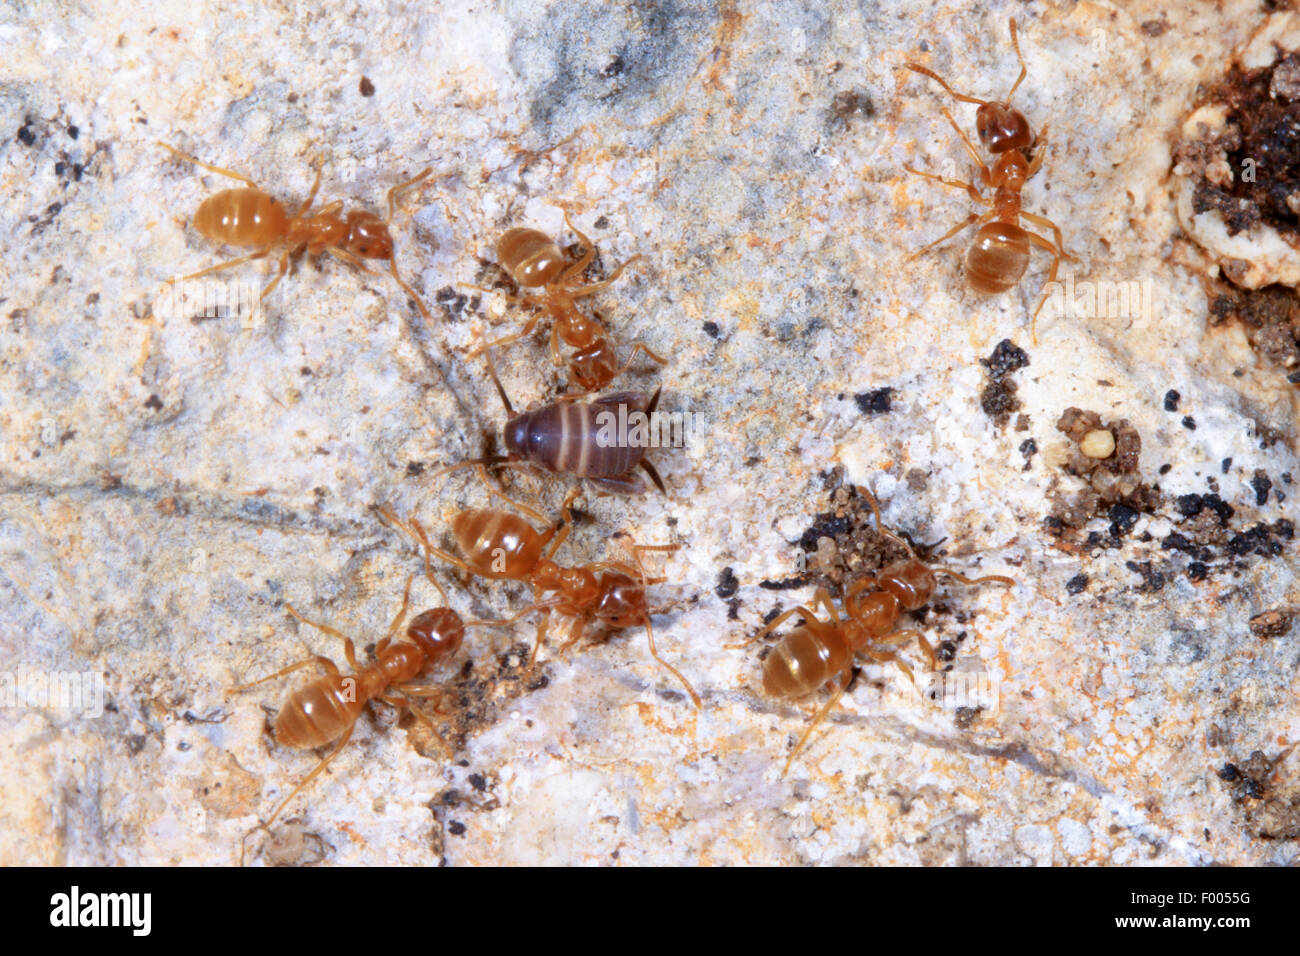 Ant-amare il cricket, Ant cricket, Myrmecophilous cricket, Ant's-nest cricket (Myrmecophilus acervorum), tra le formiche, Germania Foto Stock